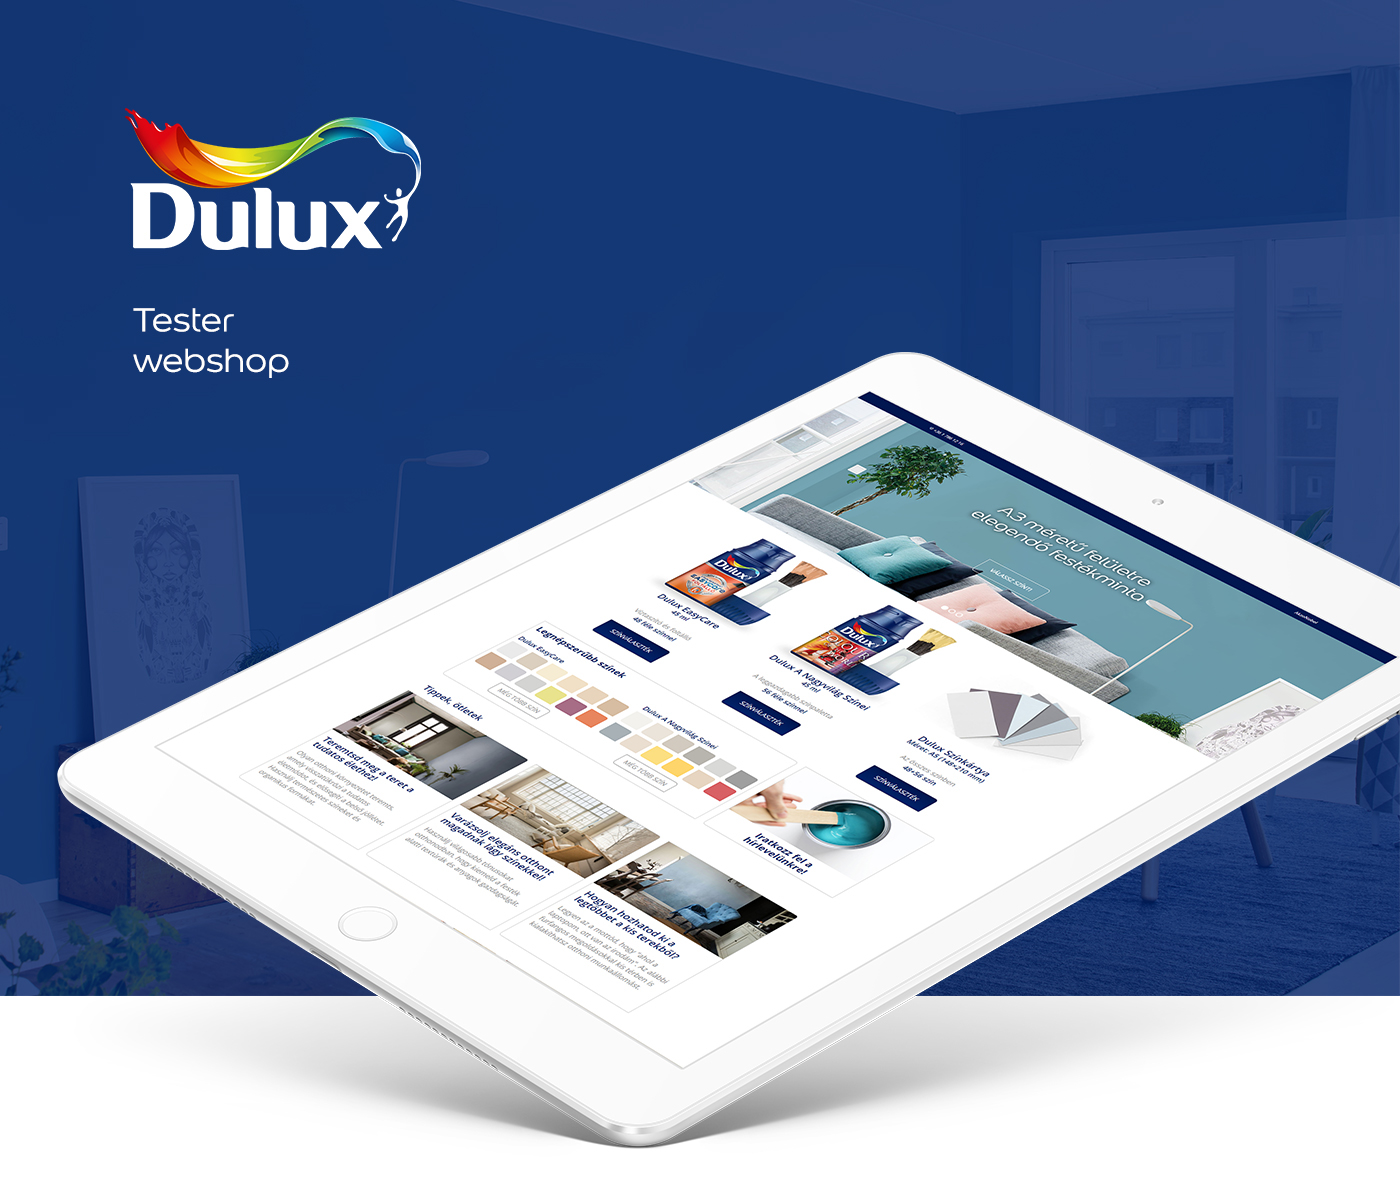 Dulux Tester webshop lets colour paint Web UI ux web development  campaign & strategy